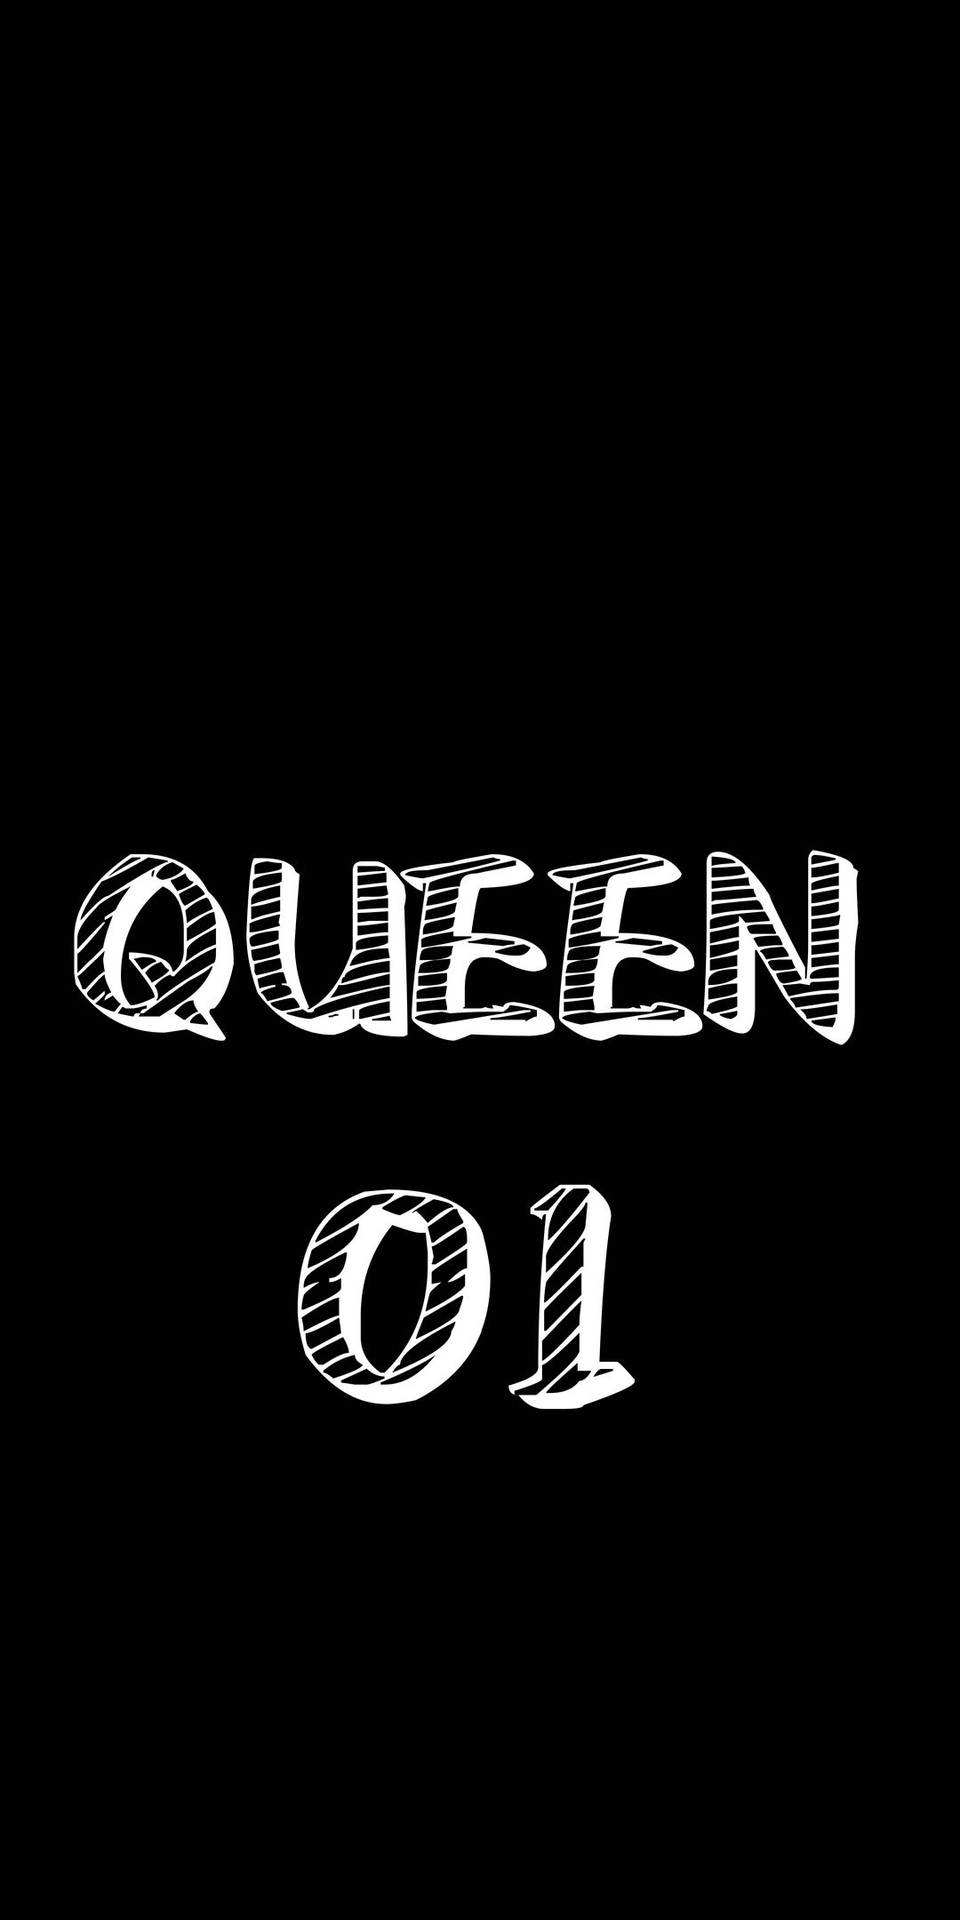 Black Queen 01